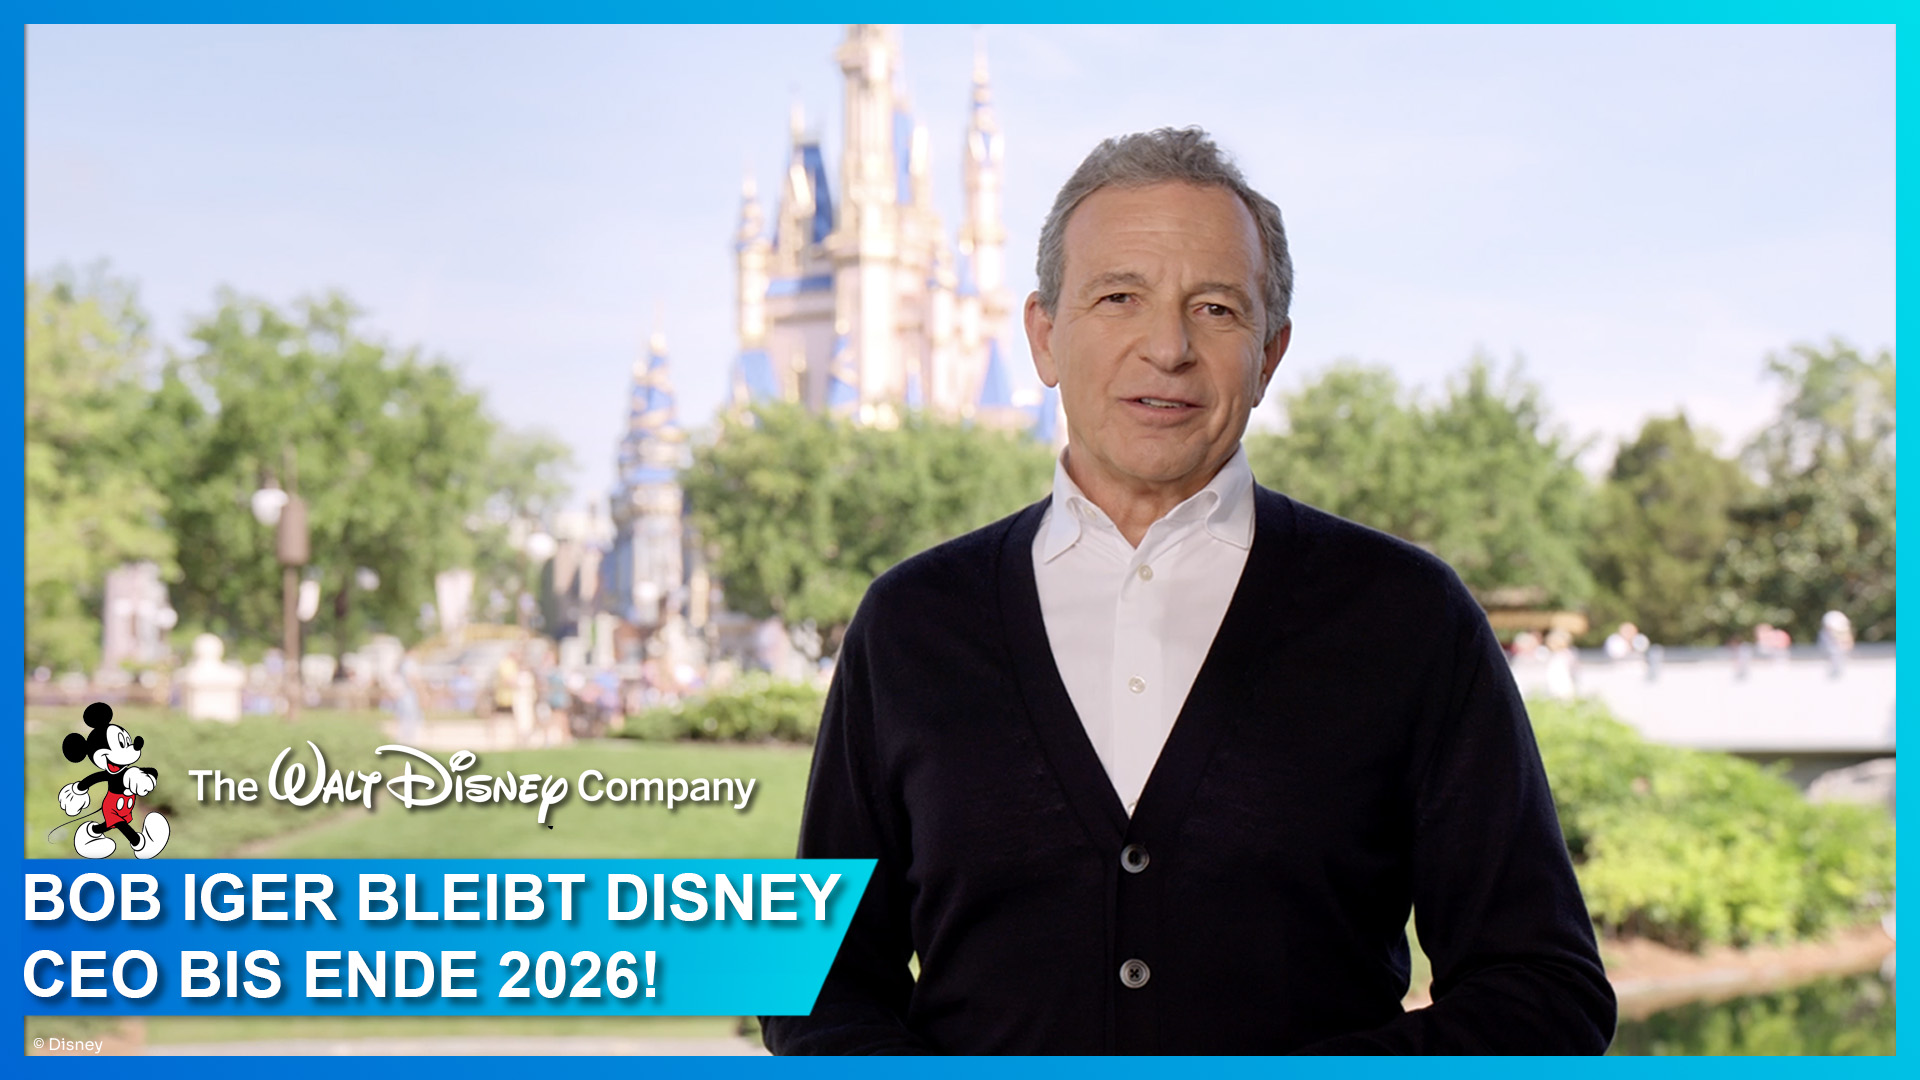 Bob Iger bleibt CEO von The Walt Disney Company bis Ende 2026